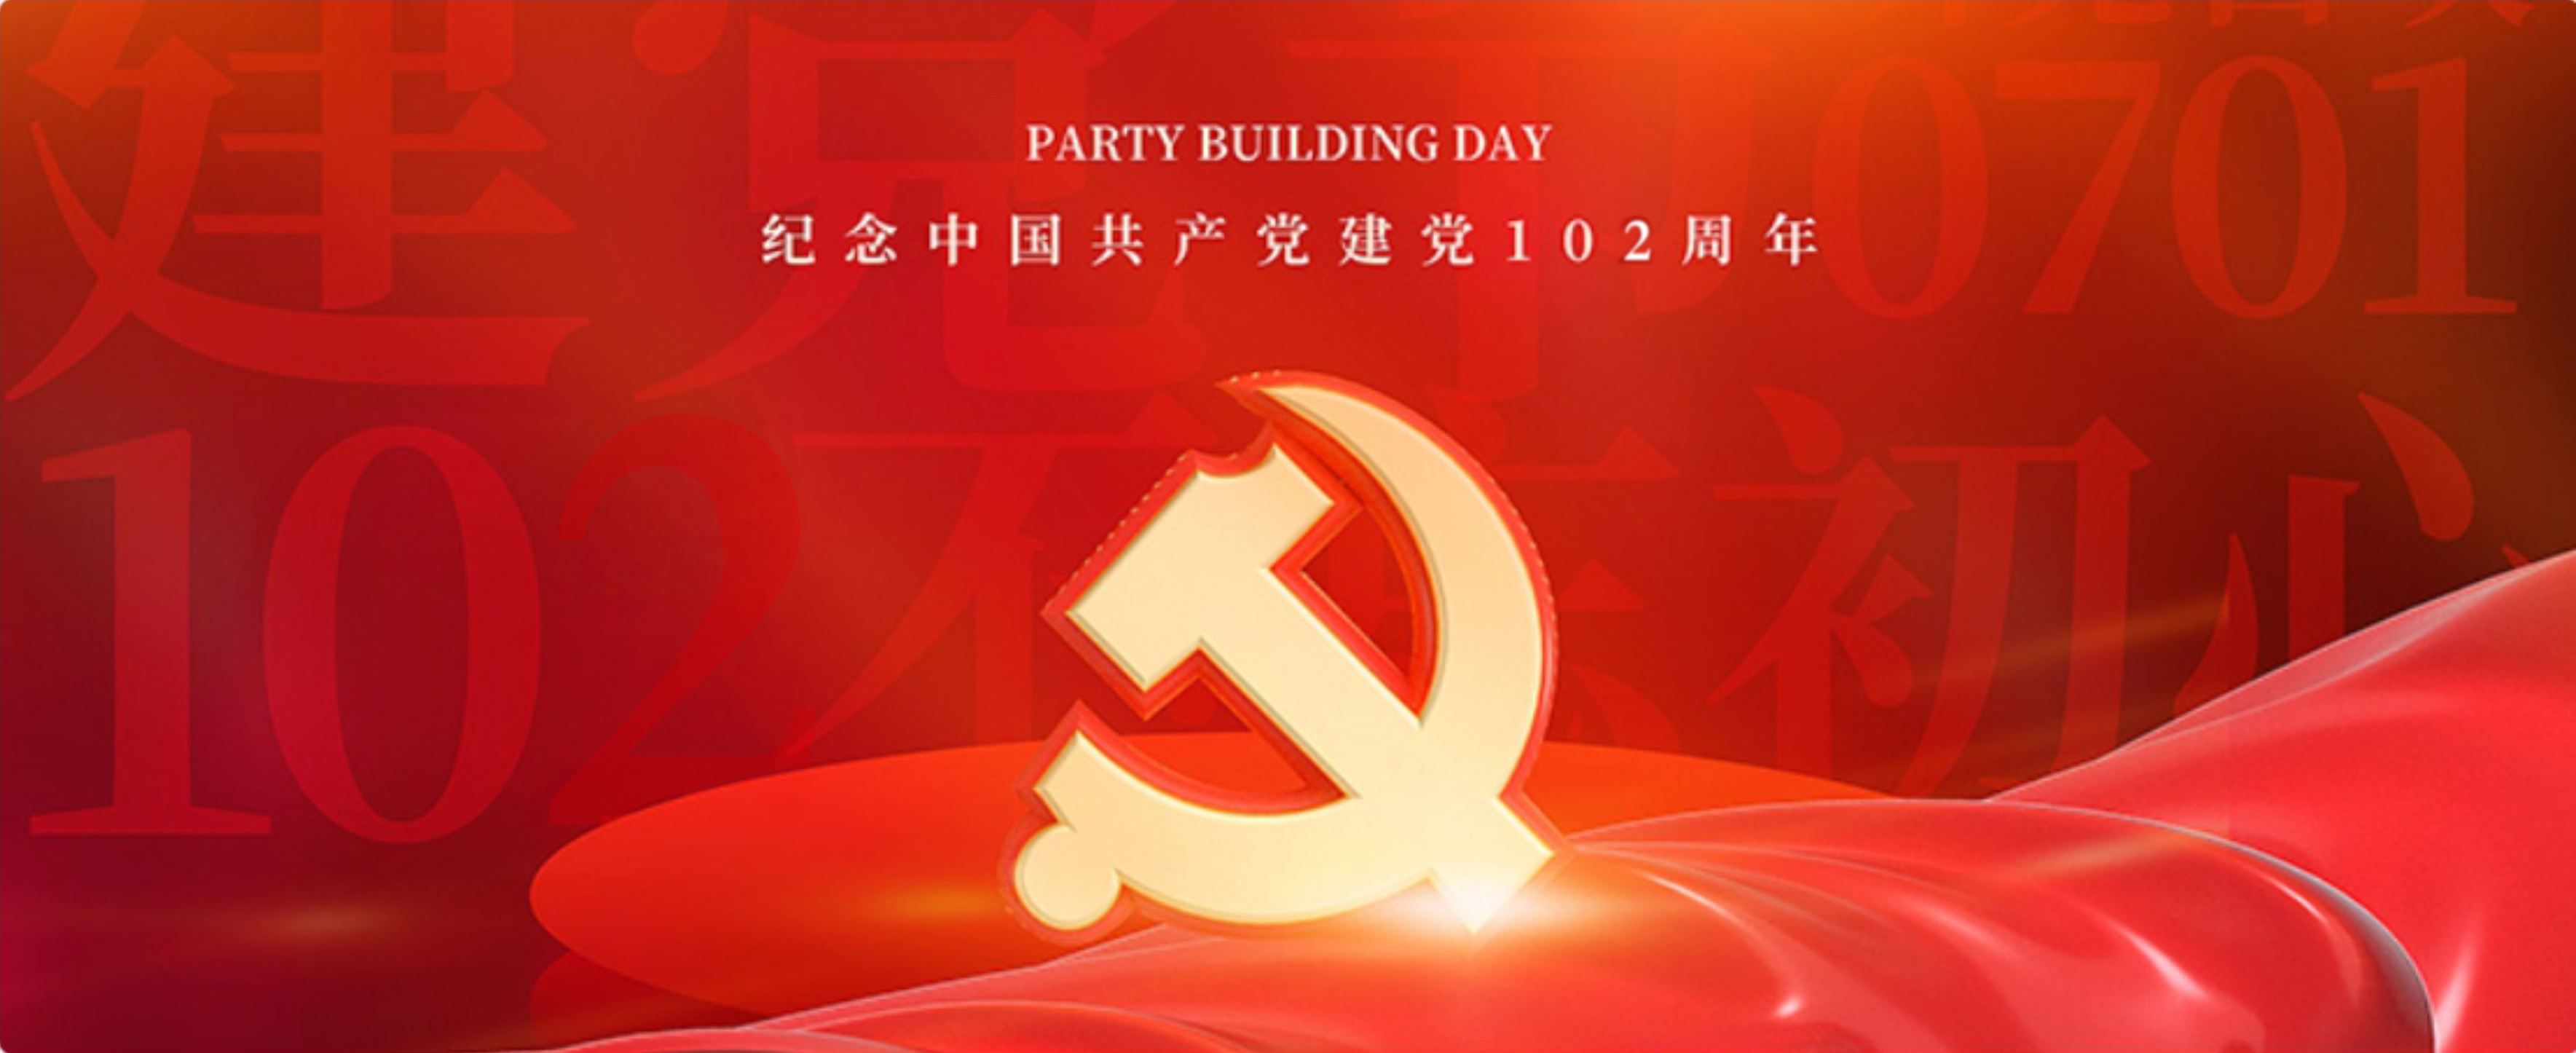 初心向黨 || 公司舉辦慶祝中國共產黨成立102周年大會